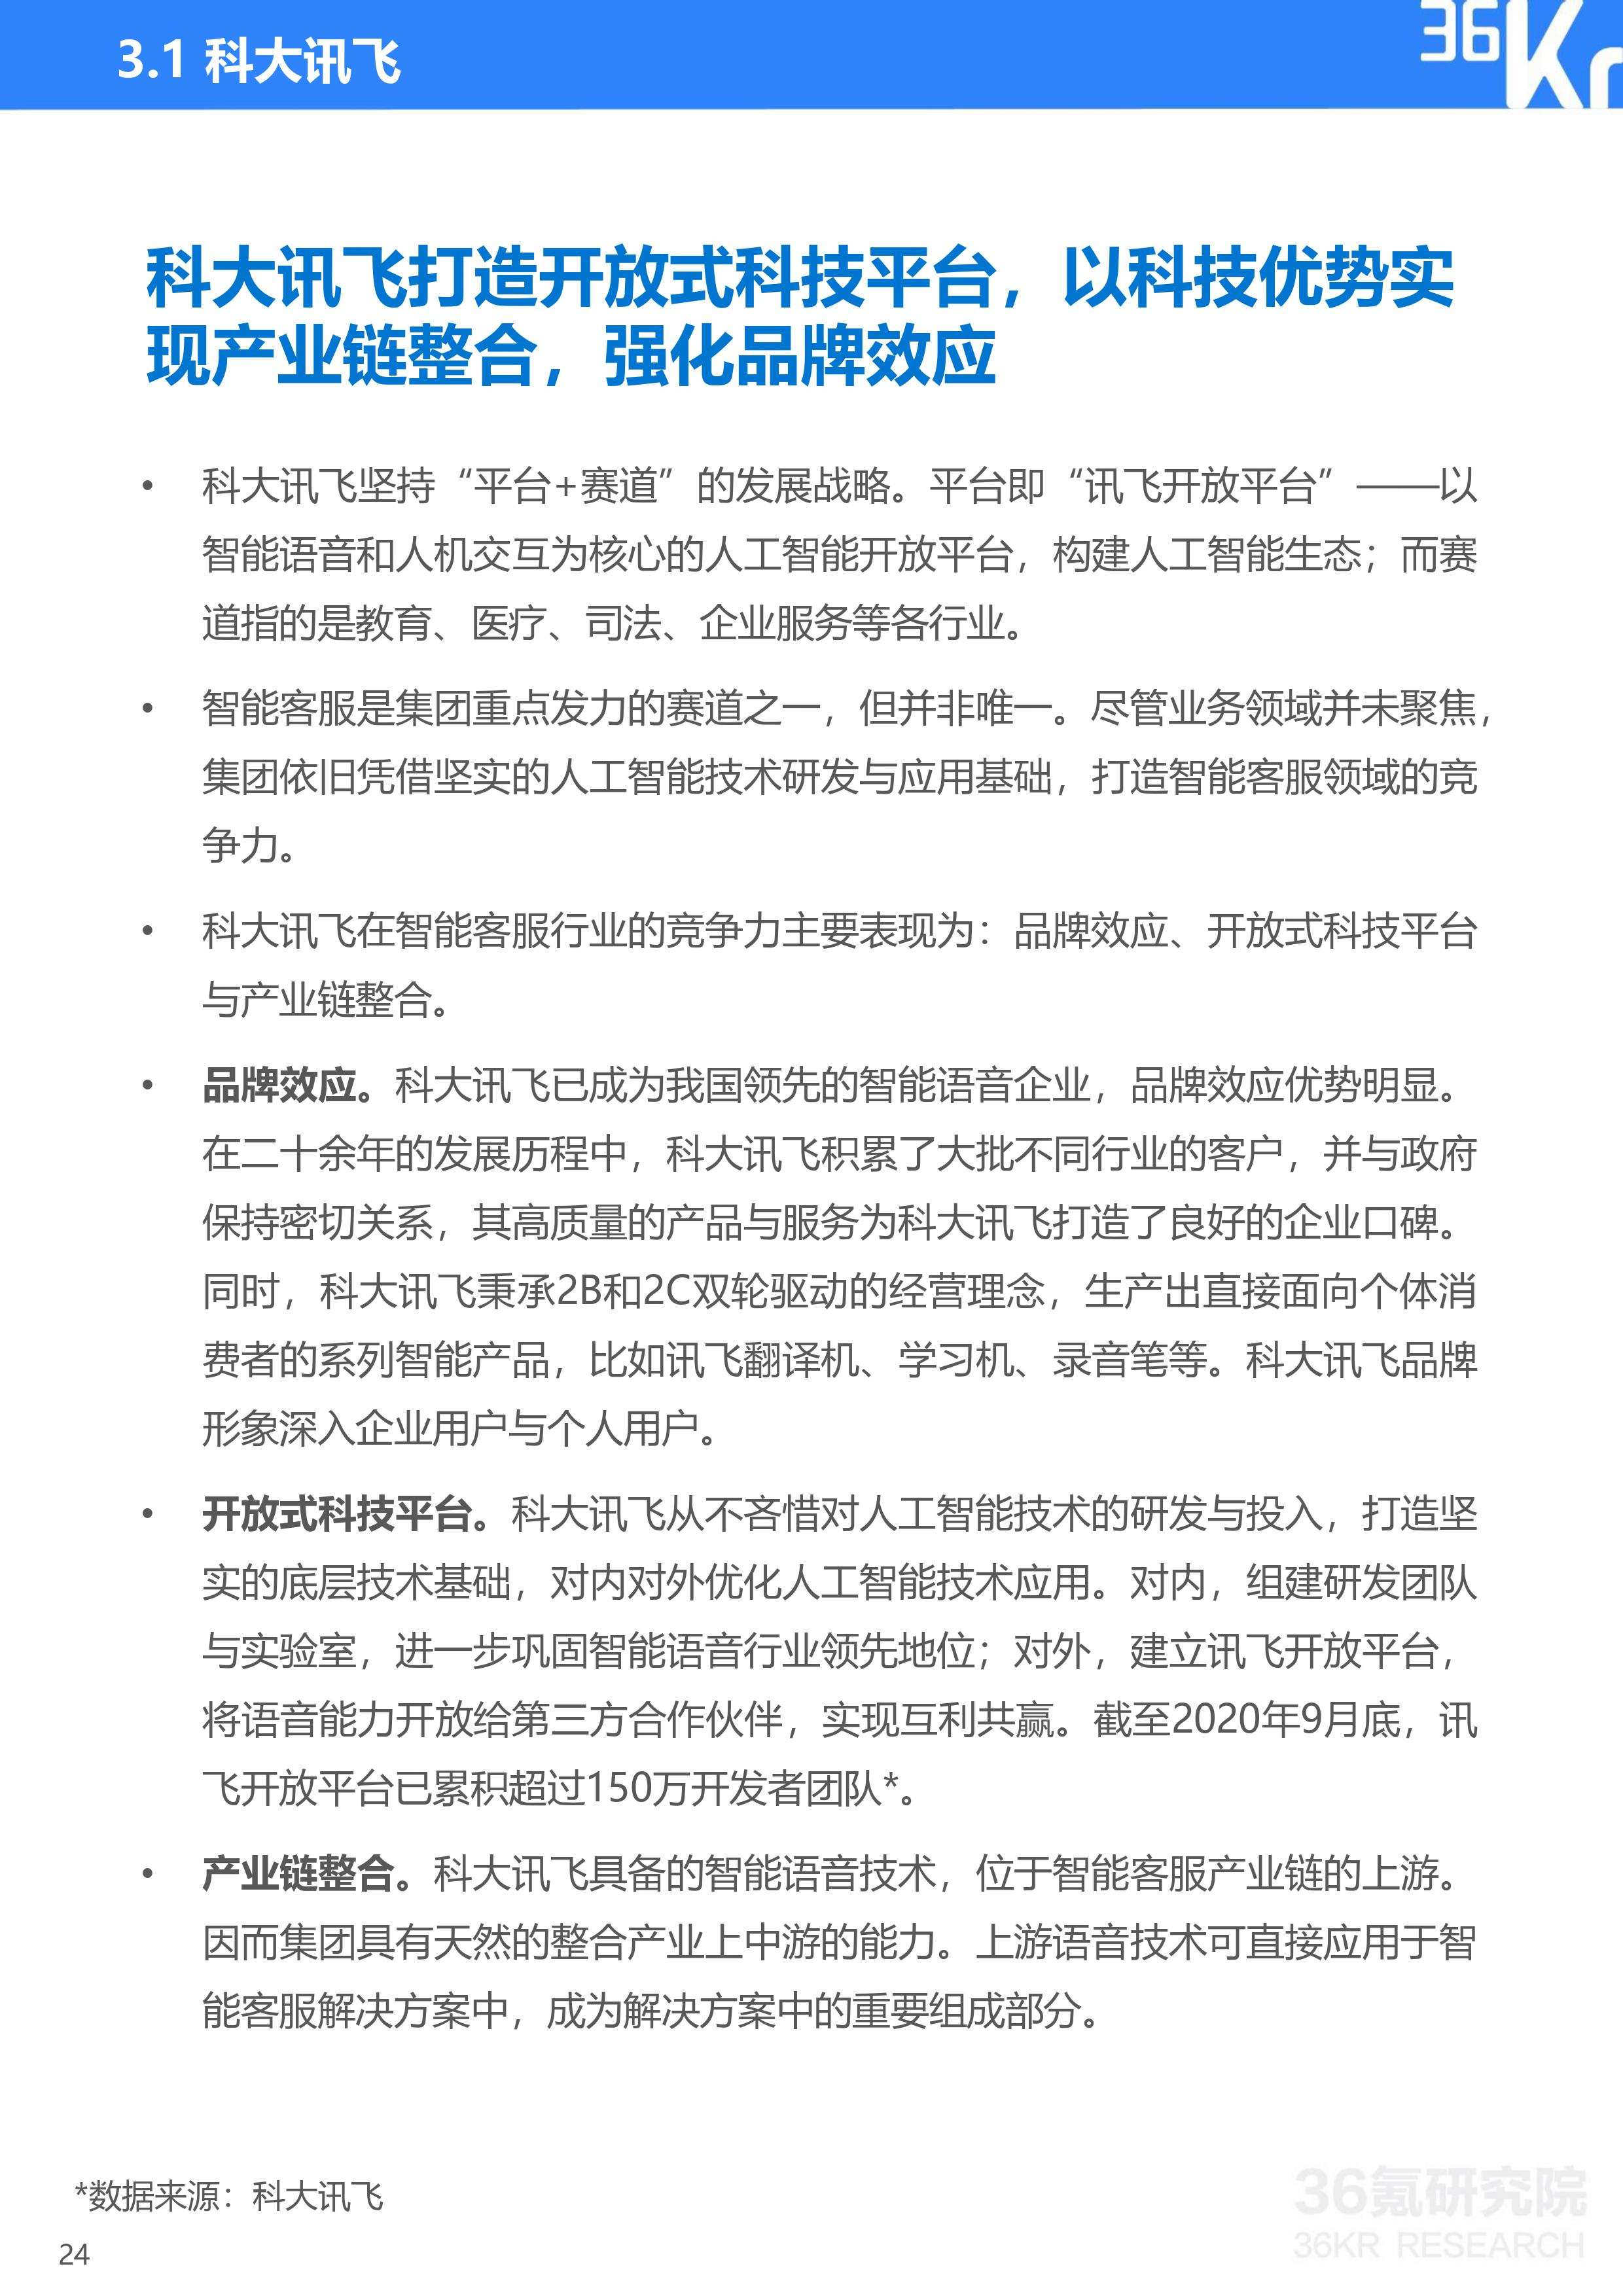 36氪研究院 | 2020年中国智能客服行业研究报告